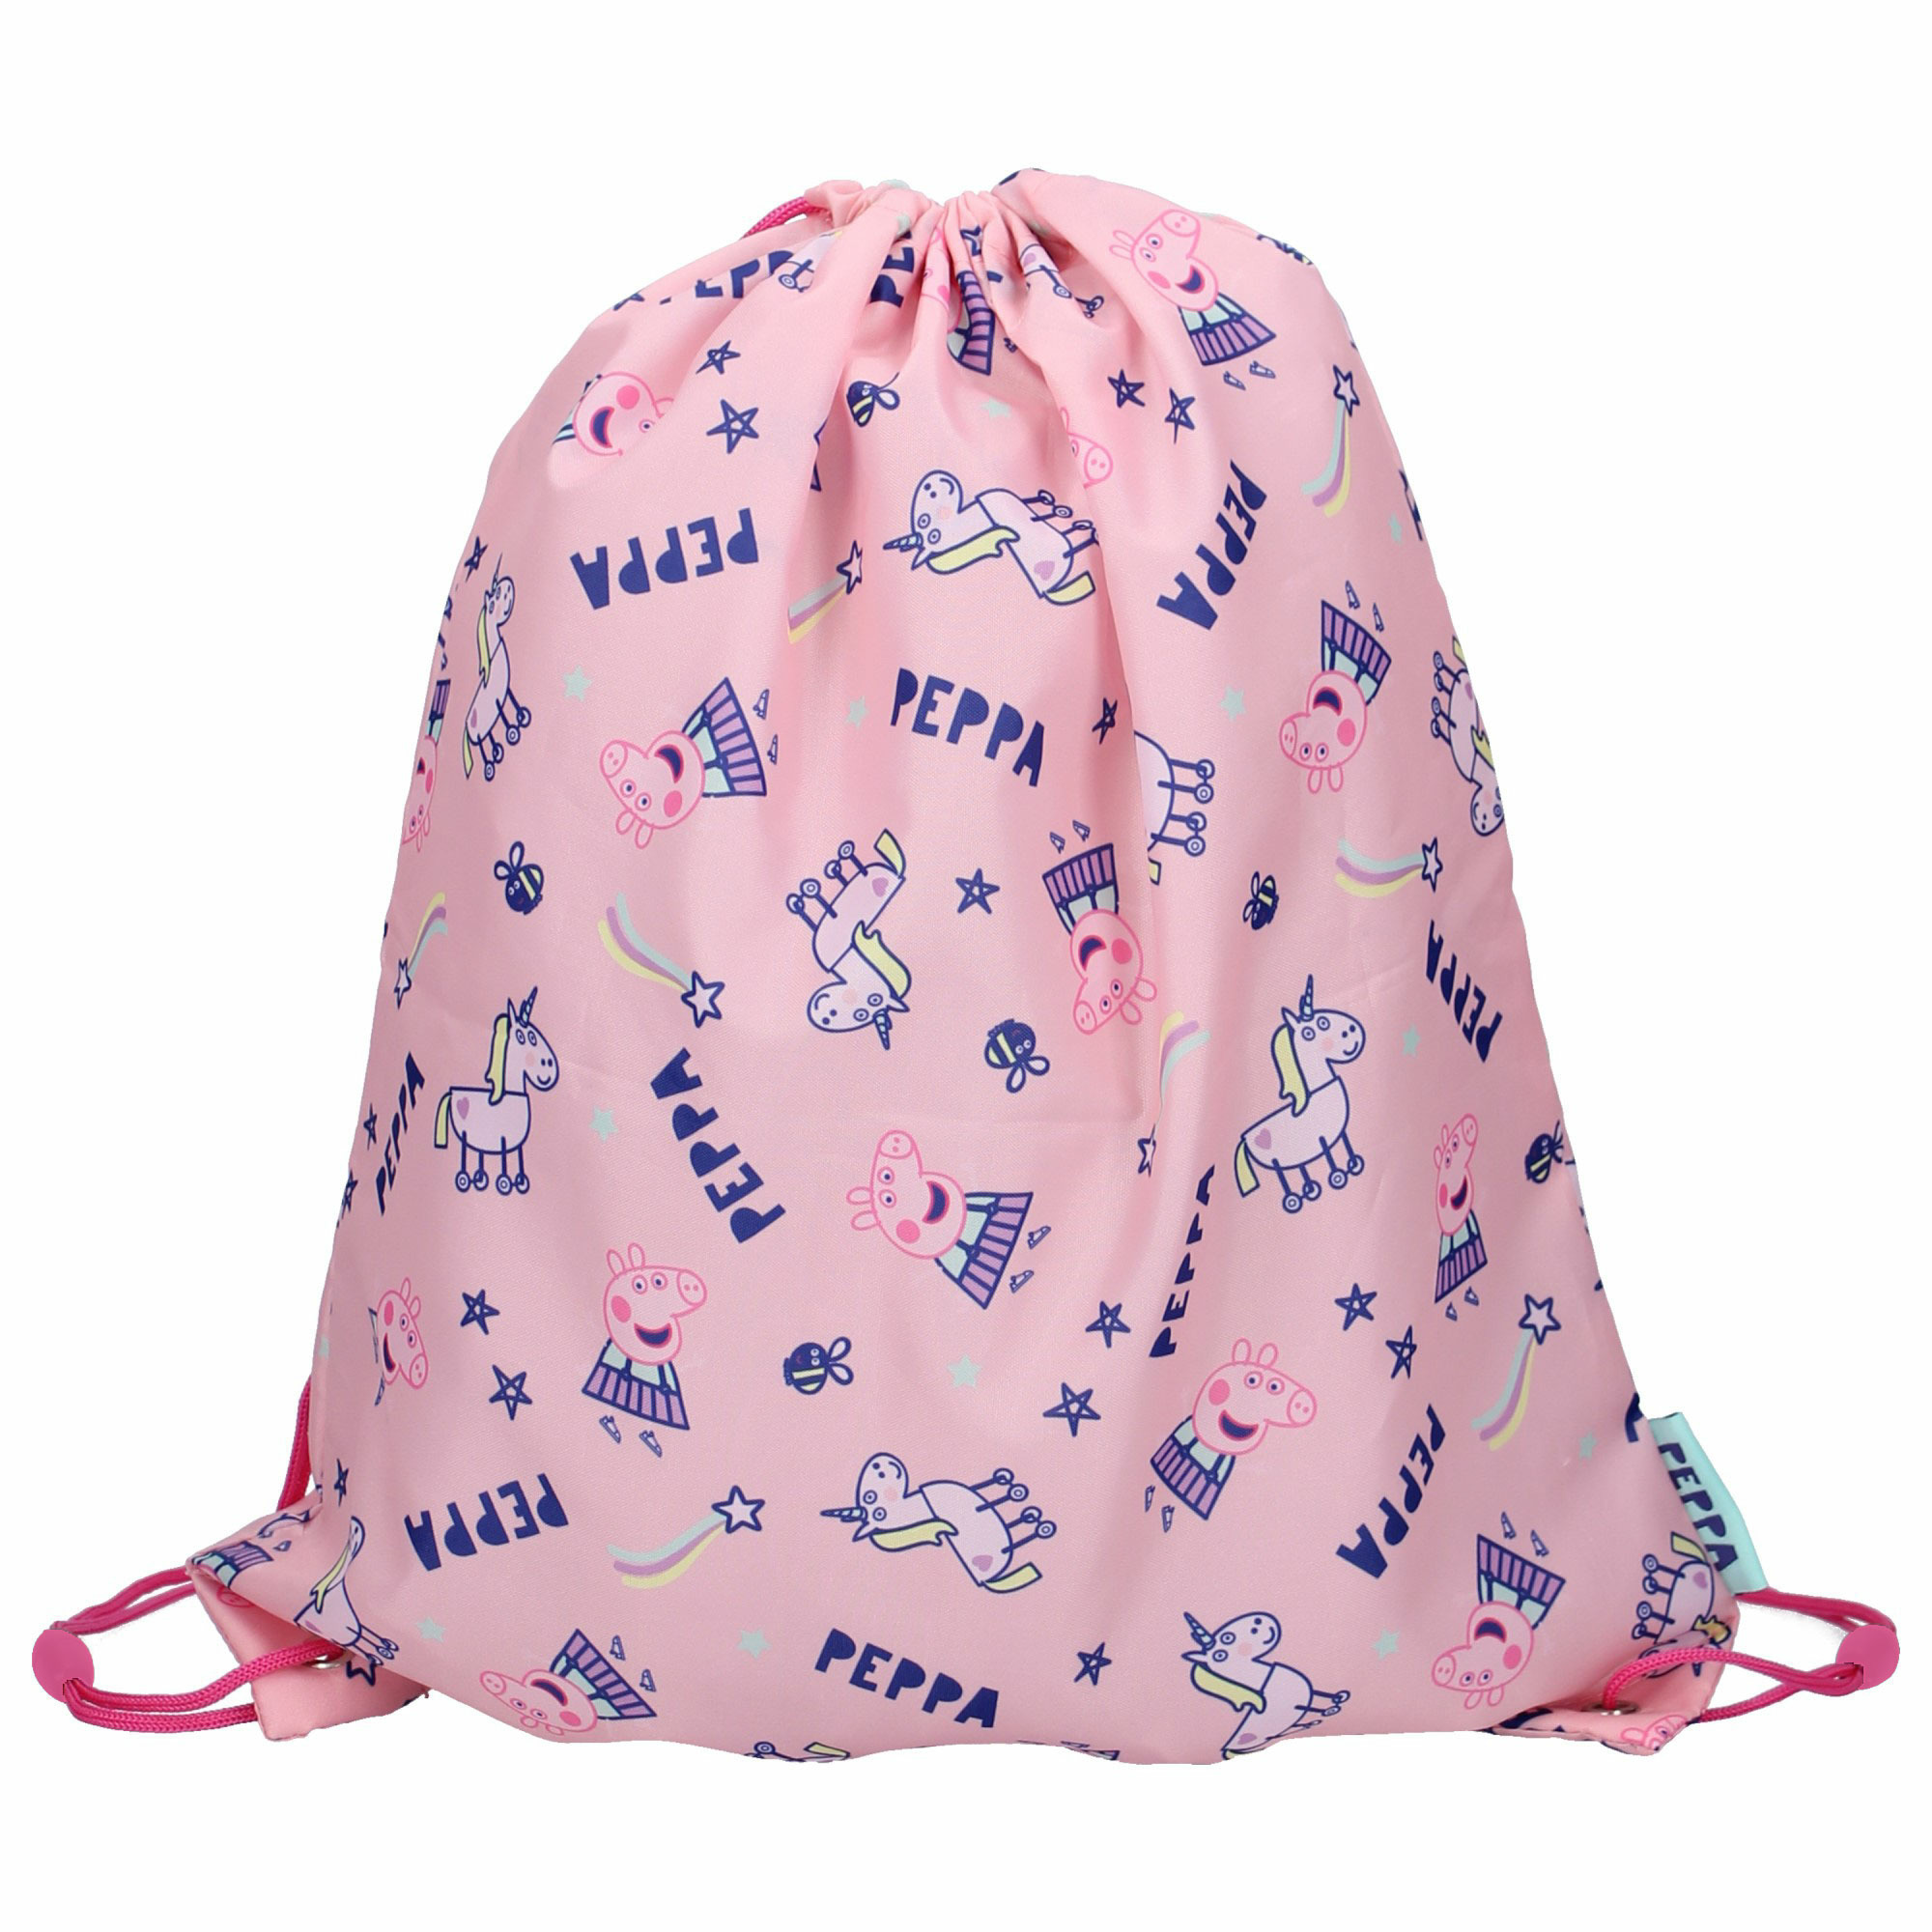 Peppa Pig gymtas-rugzak-rugtas voor kinderen roze-blauw- polyester 44 x 37 cm